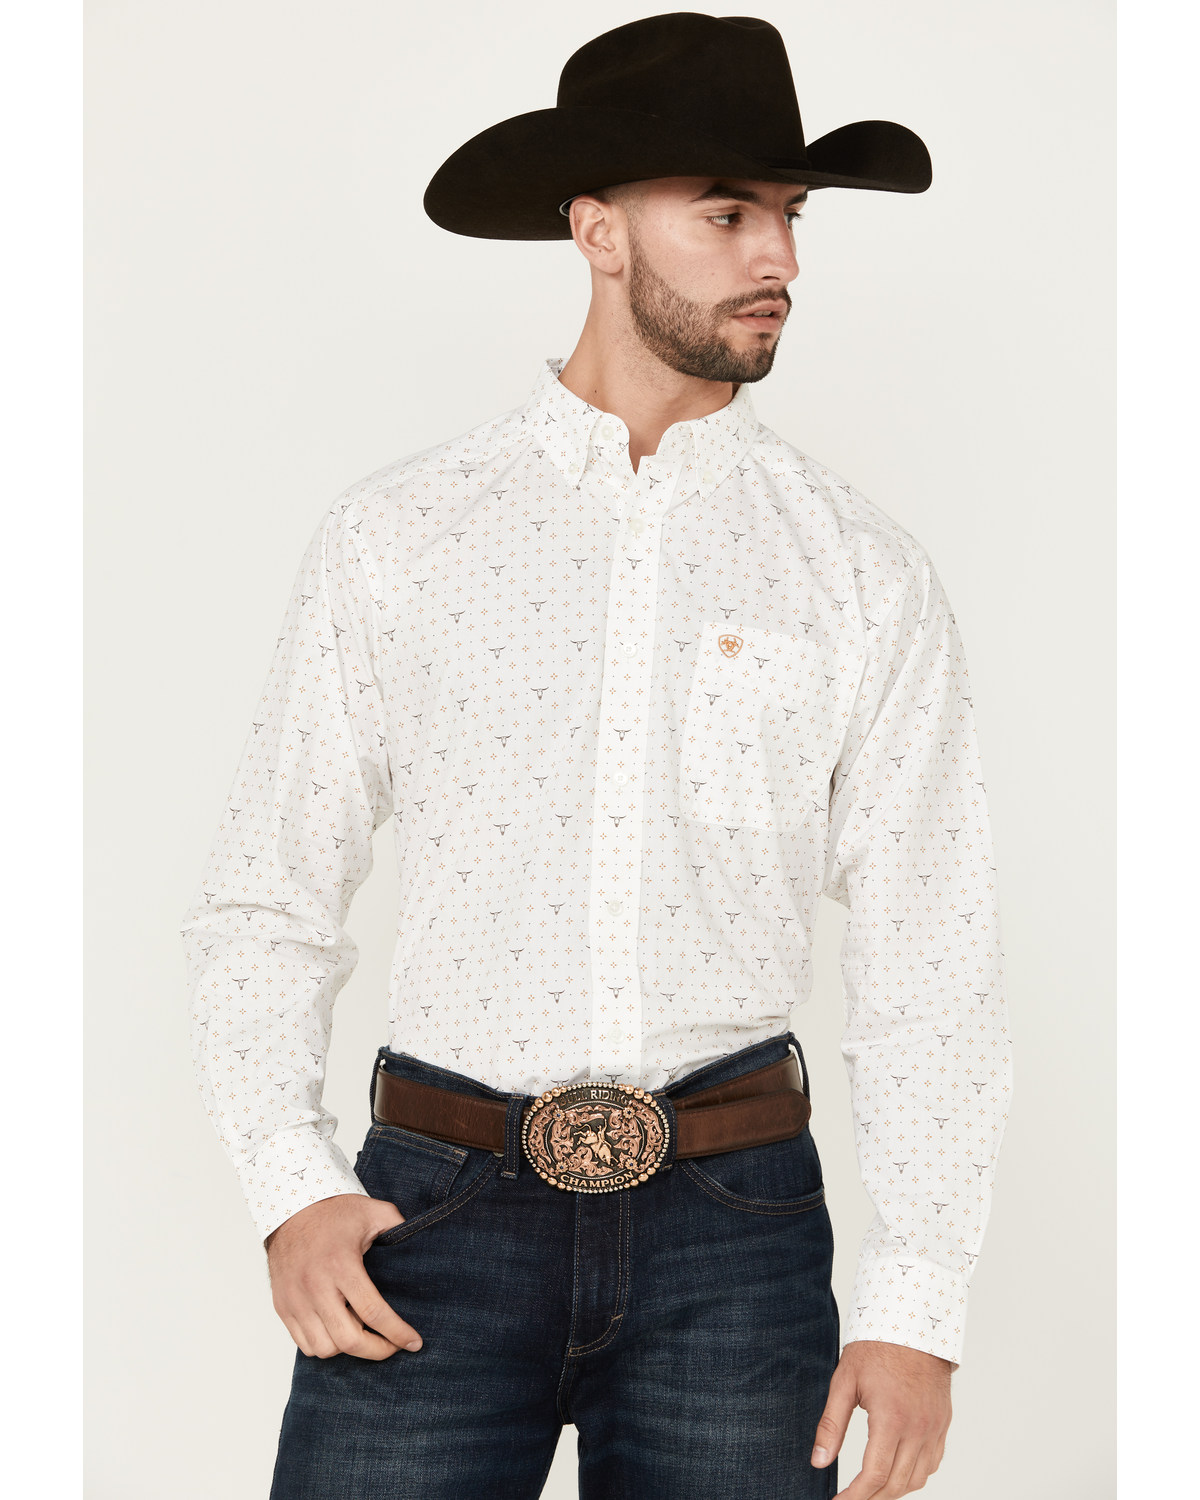 Ariat Men's Edmond Steerhead Print Long Sleeve Button-Down Western Shirt